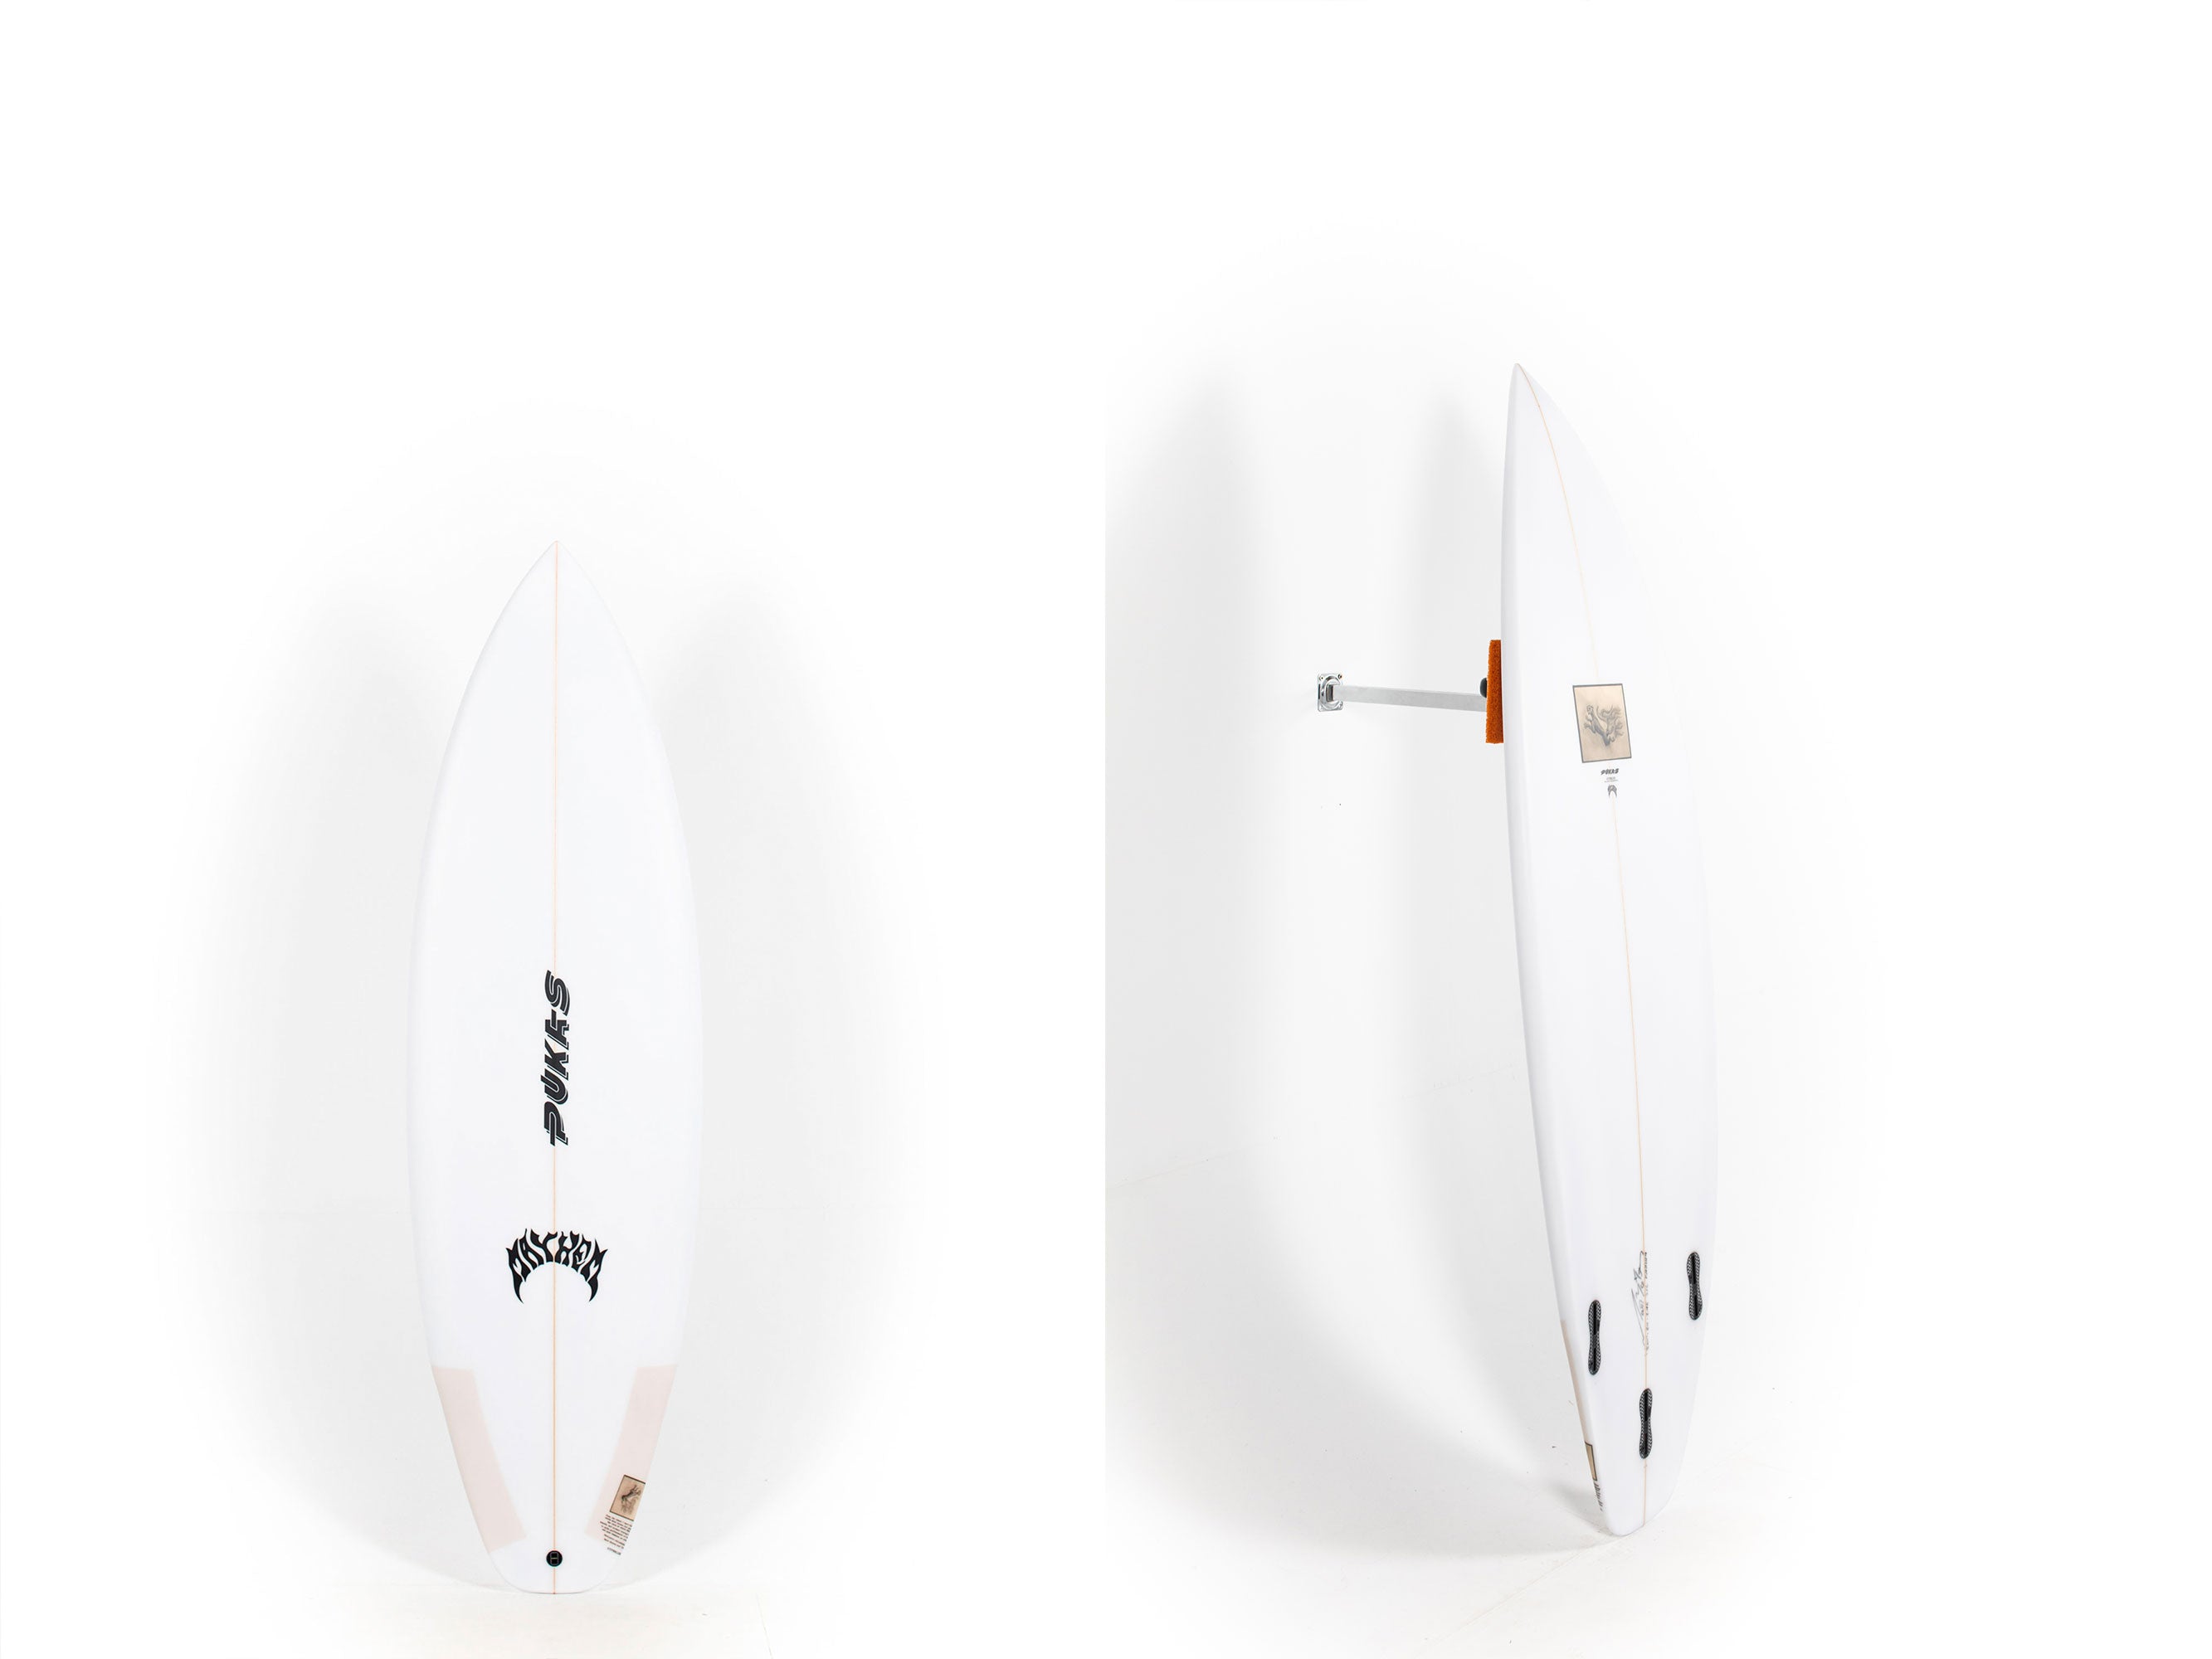 Pukas Surfboard - HYPERLINK by Matt Biolos -  5'10" x 20 x 2.45 - 31L - PM01114